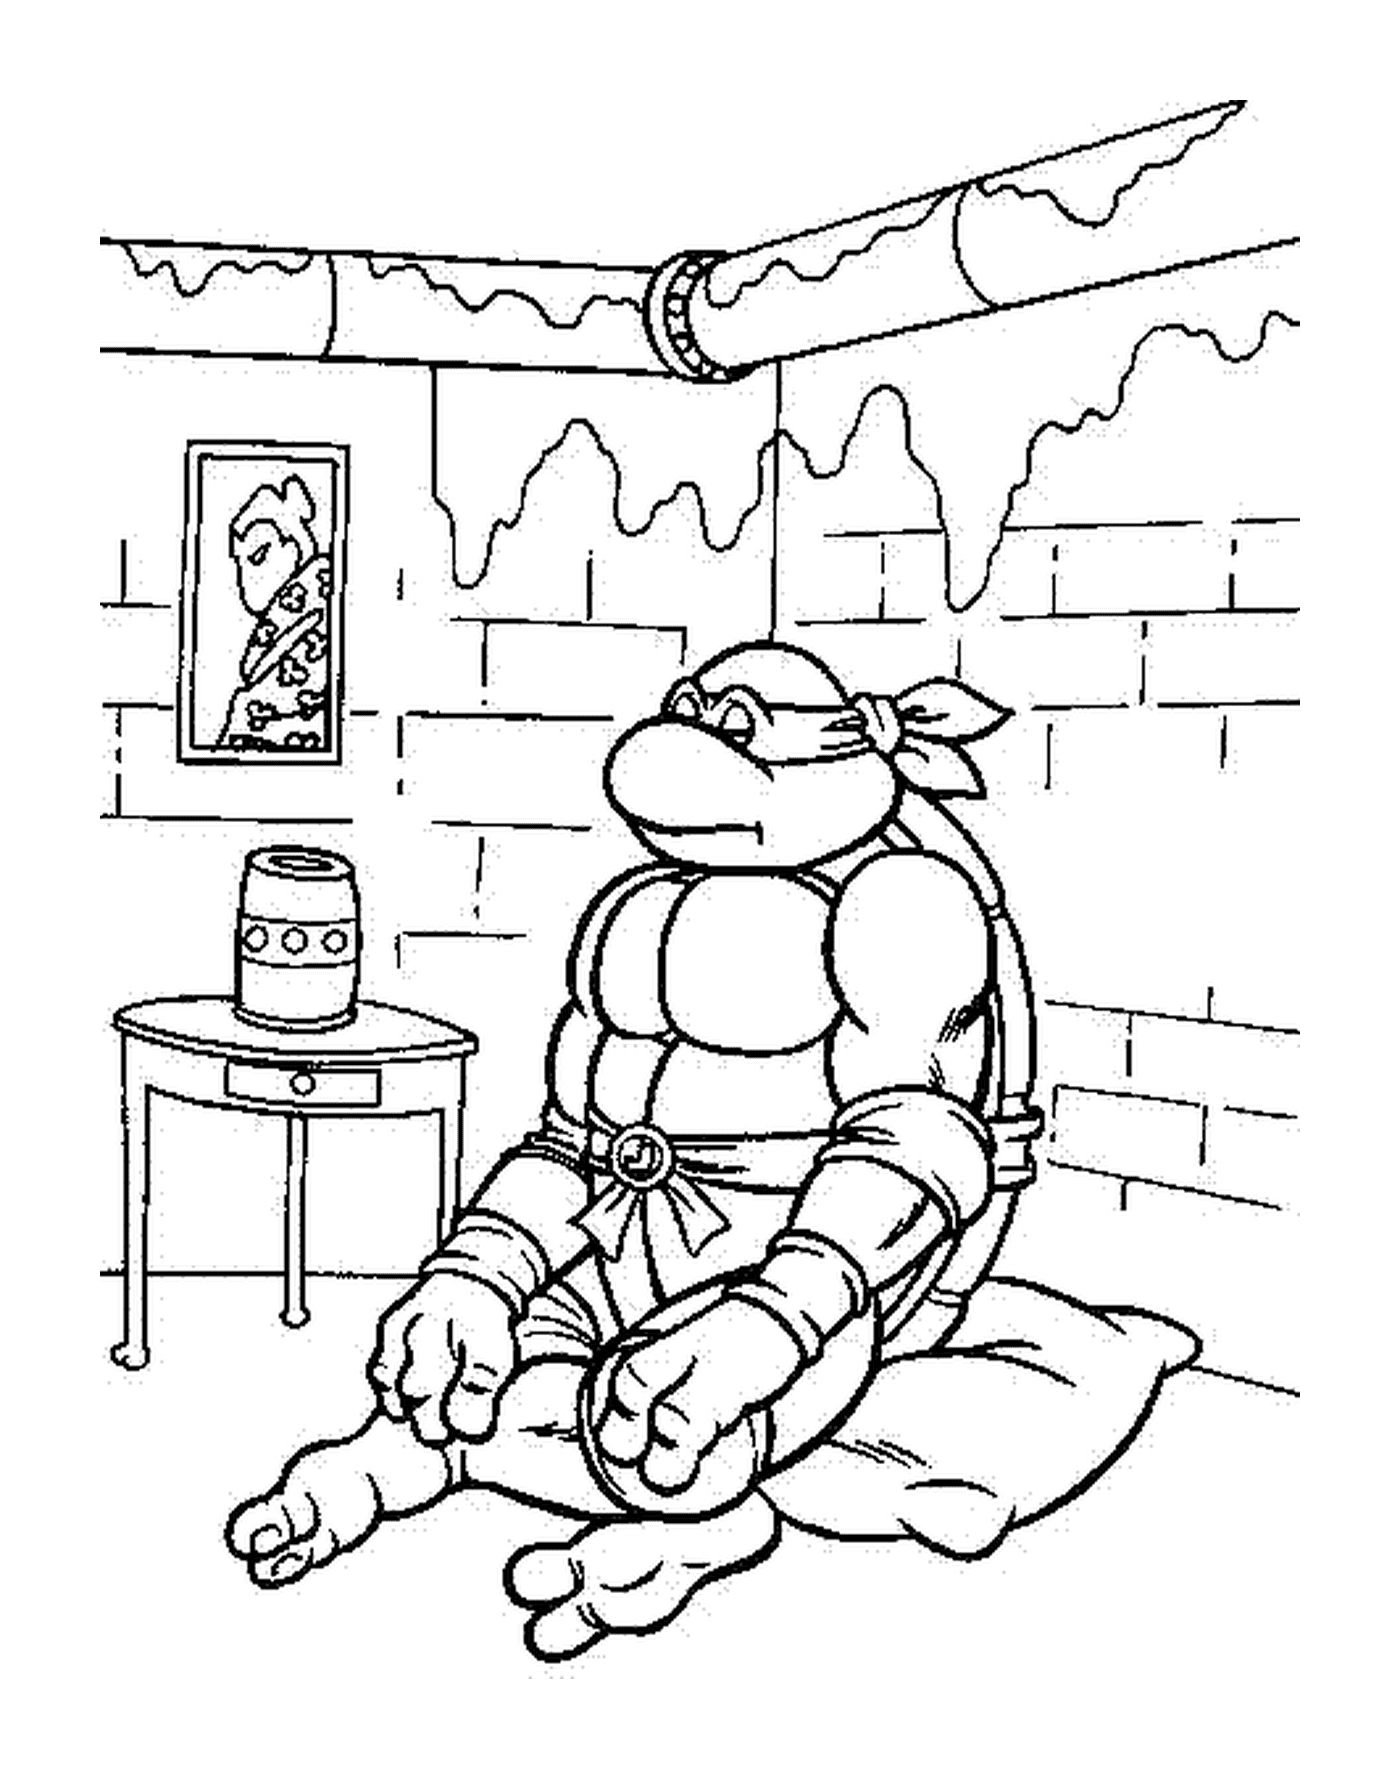  Ninja Schildkröte sitzt in einem Zimmer 